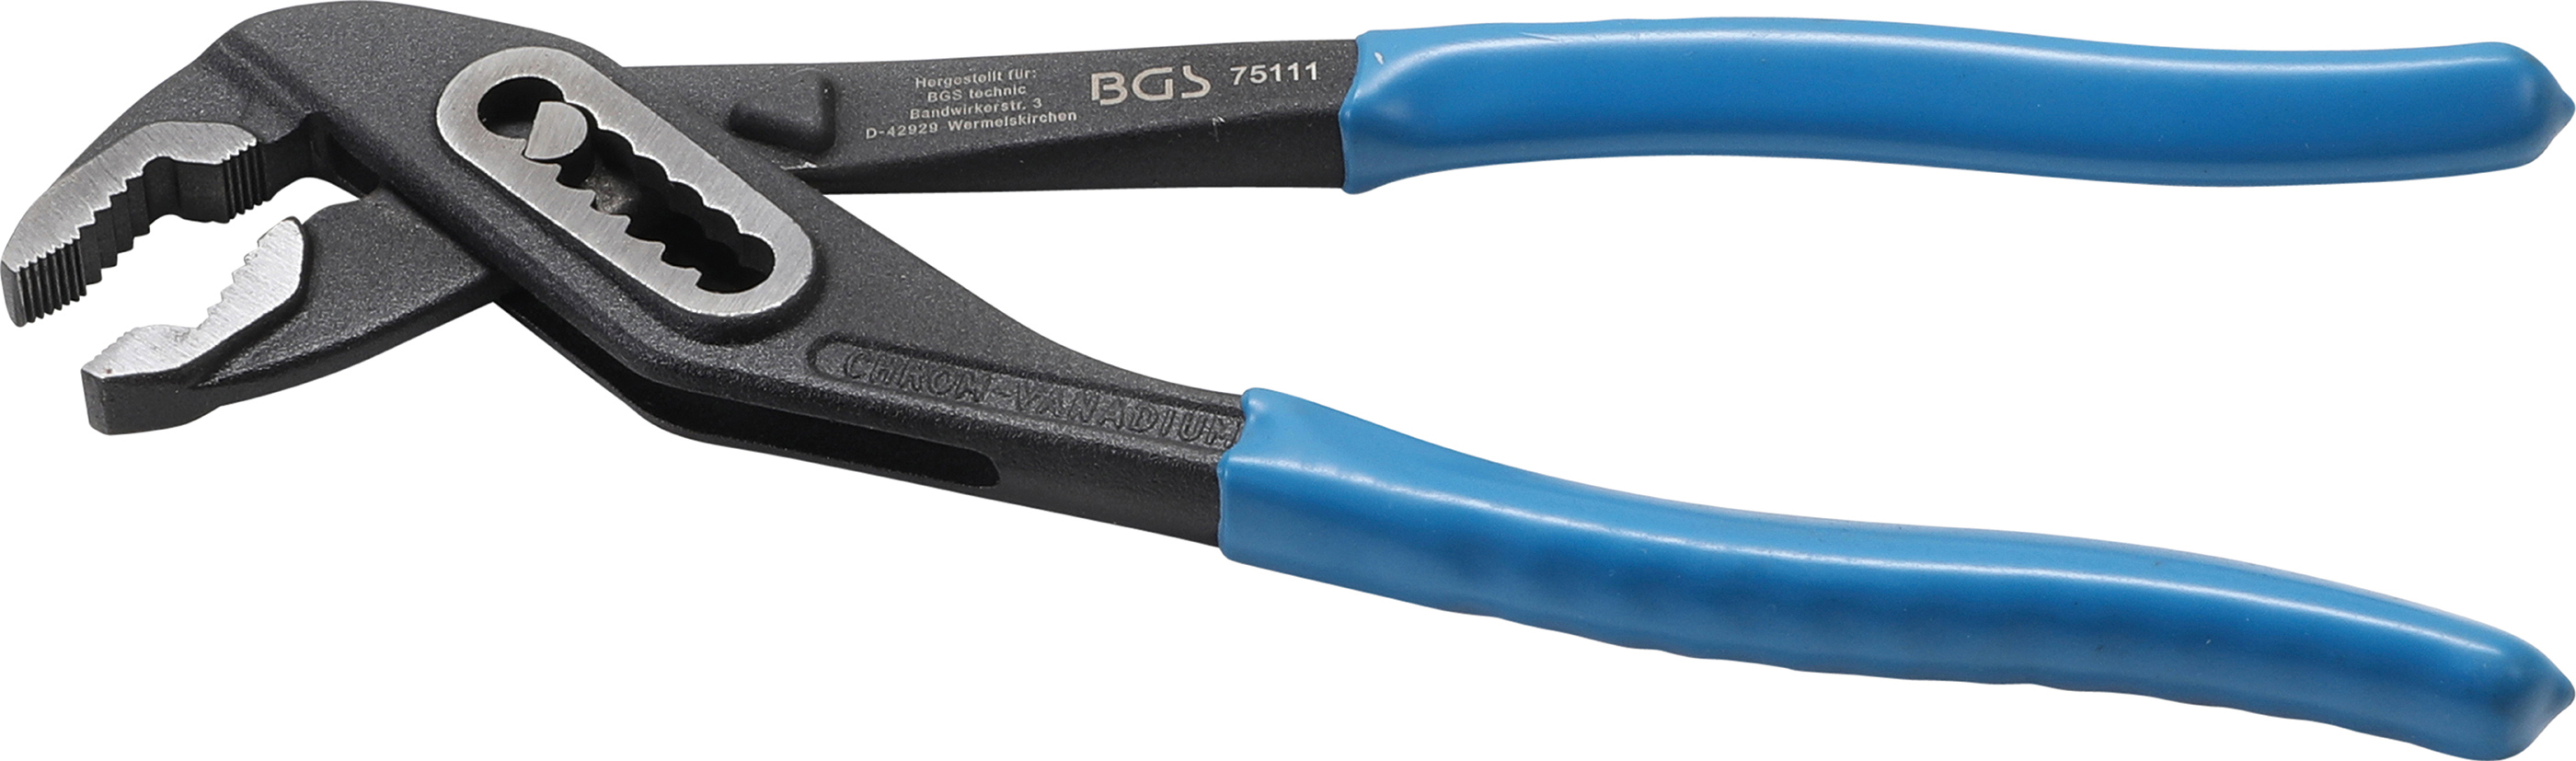 BGS 75111 Cleste reglabil cu deschidere max.38mm , lungime 240 mm